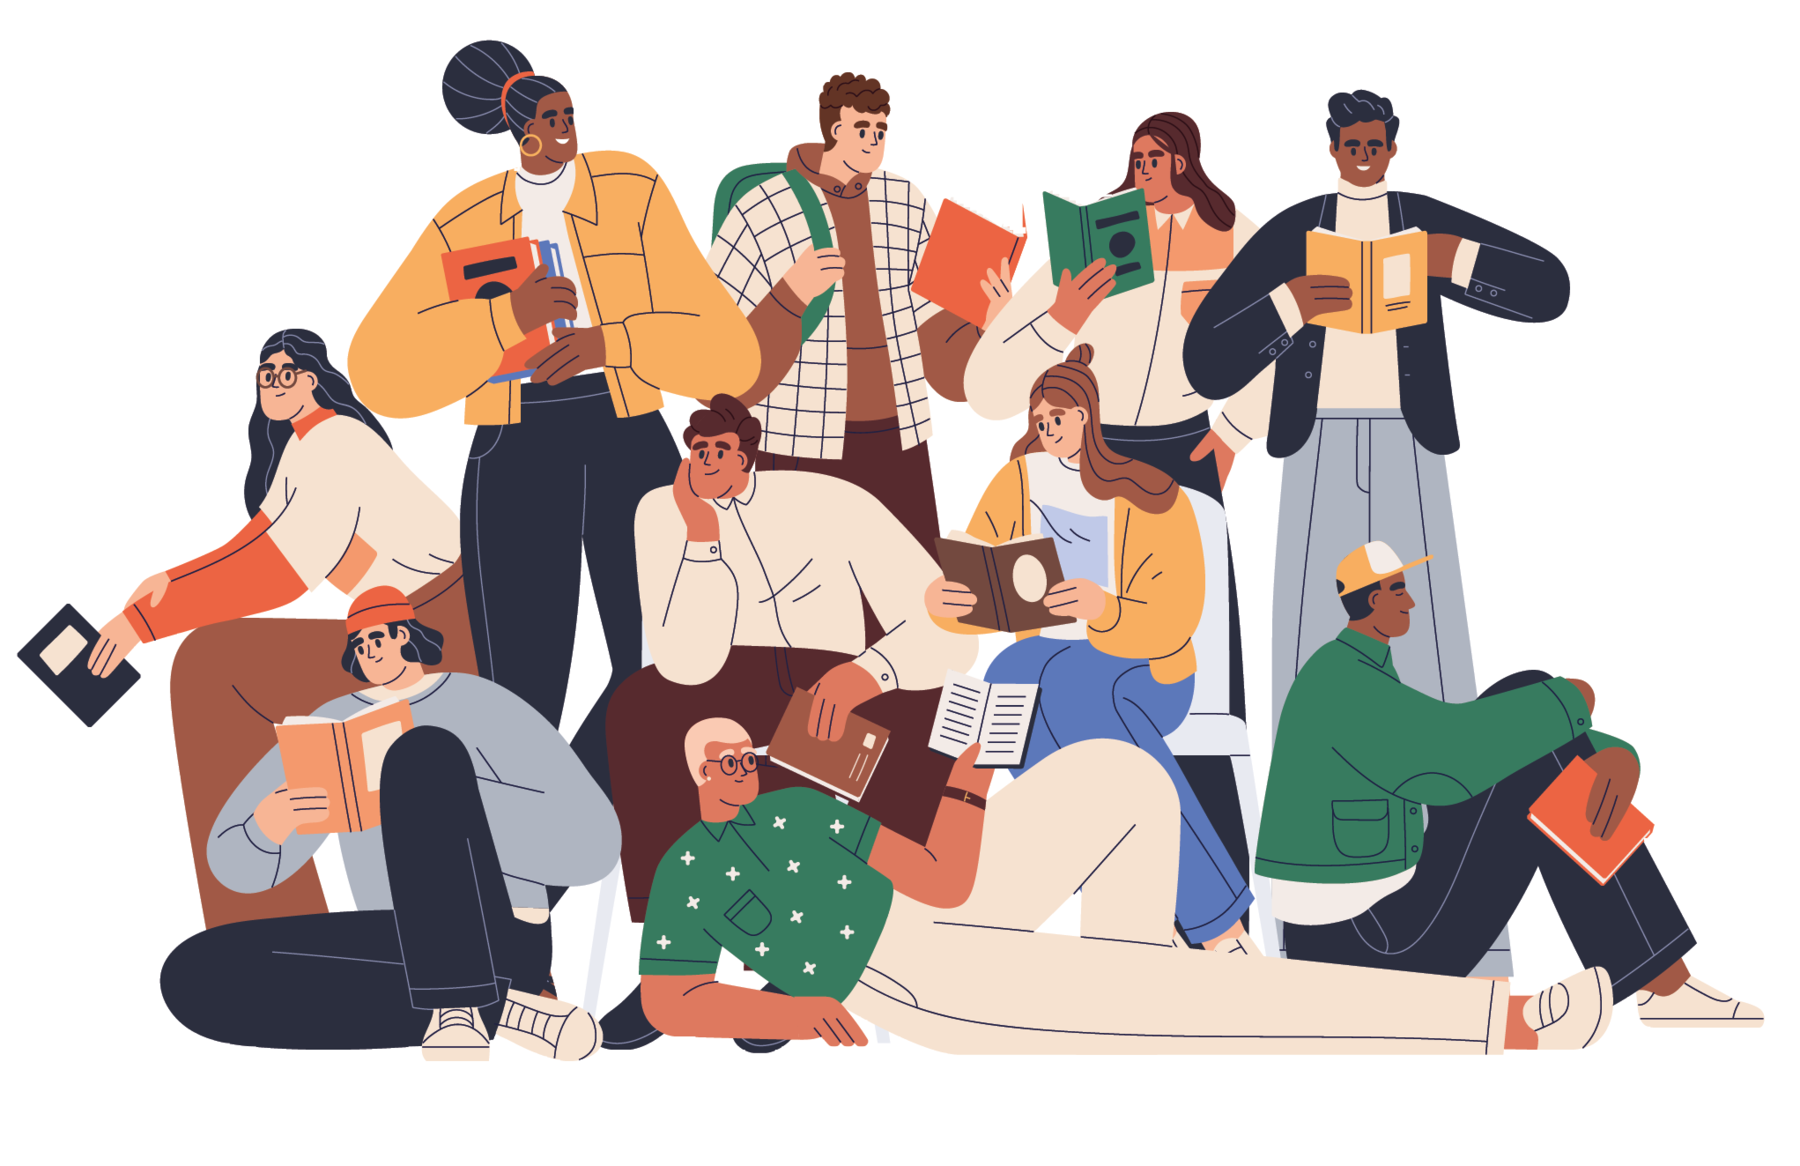 Ilustração. Dez jovens segurando um livro nas mãos. Três jovens sentados sobre o chão, três sentados no banco e quatro em pé. São três mulheres e sete homens, de diferentes tons de pele, roupas de cores diversas.